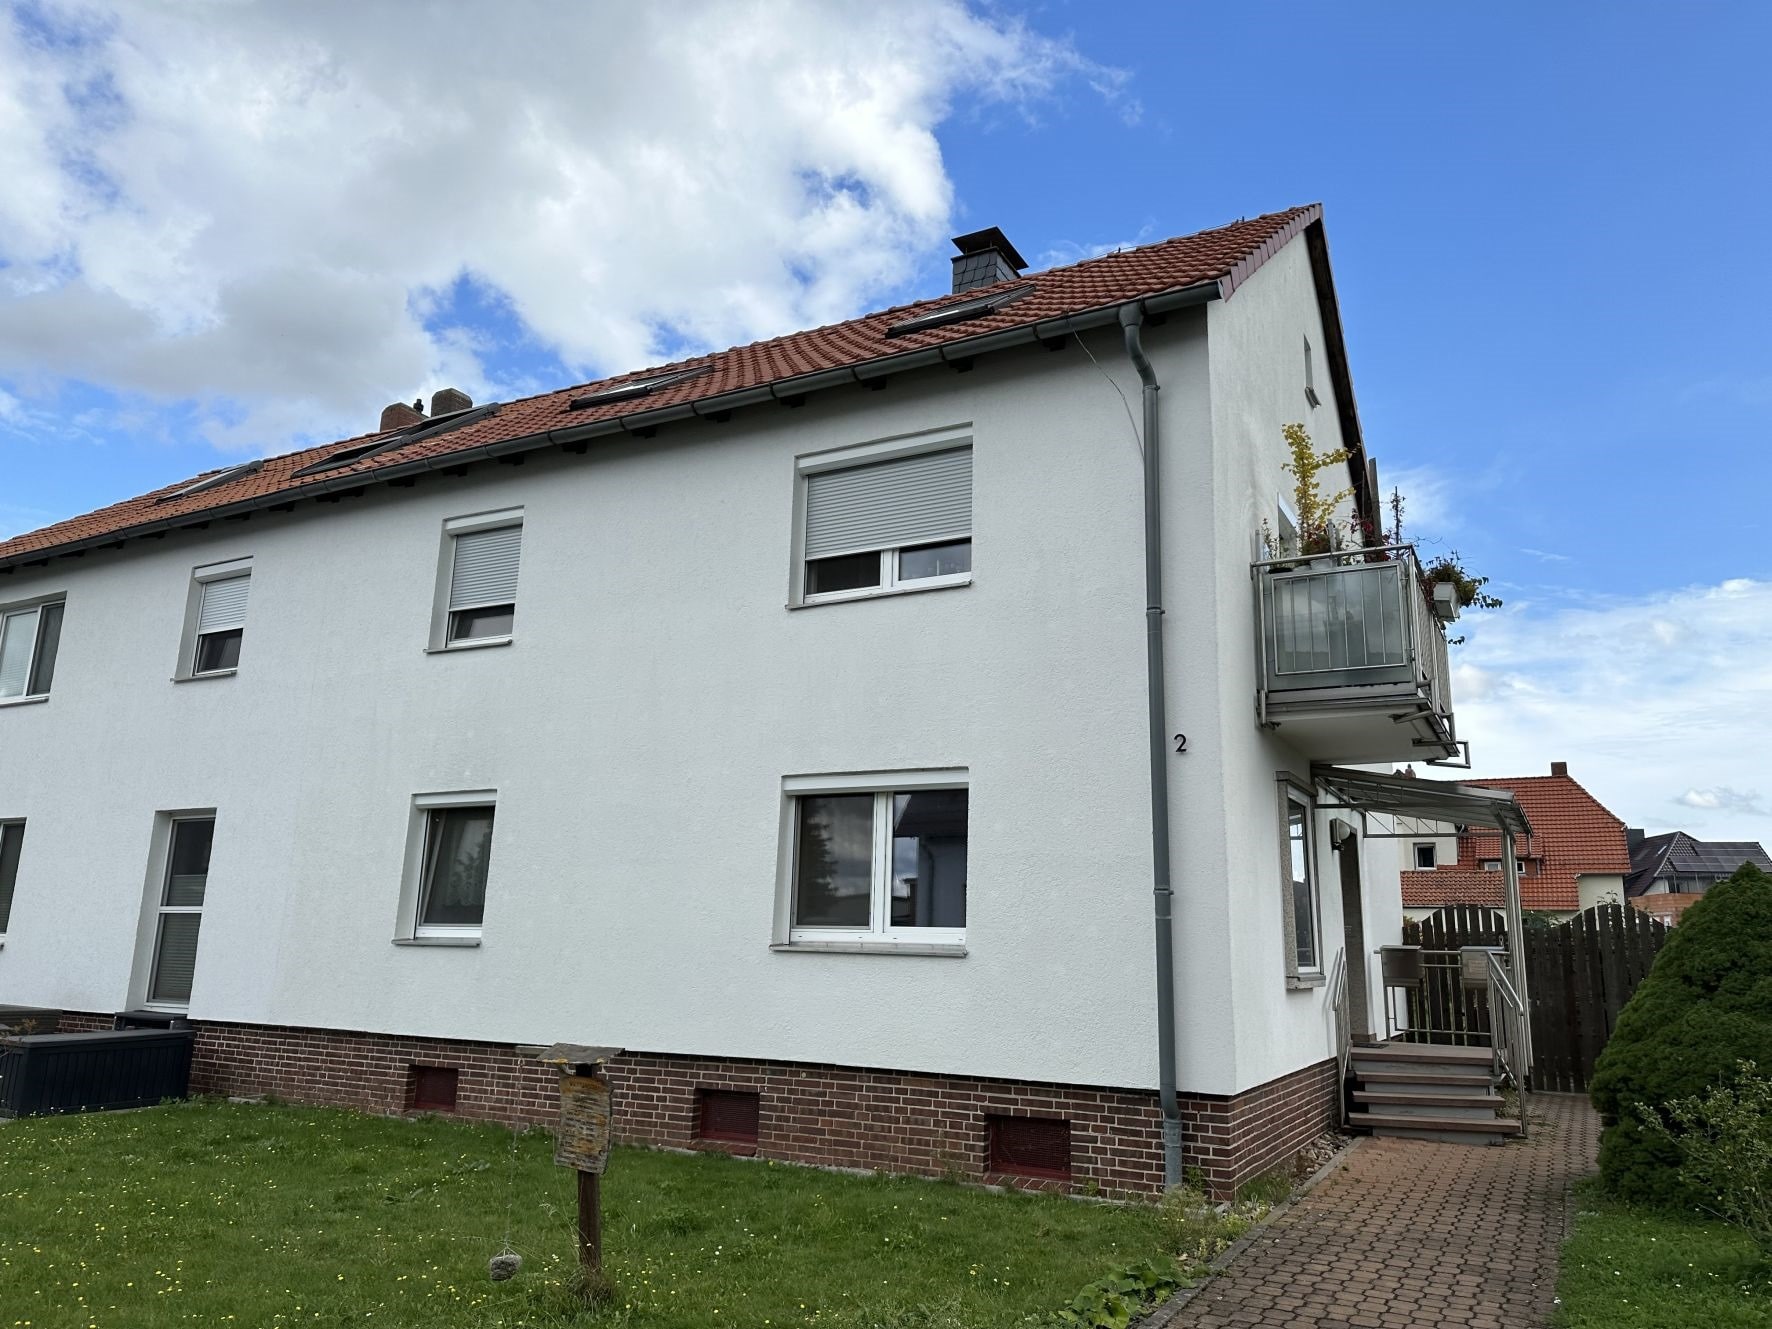 Teilvermietetes Ein-/Zweifamilienhaus mit großem Grundstück in Ronnenberg, 30952 Ronnenberg, Zweifamilienhaus